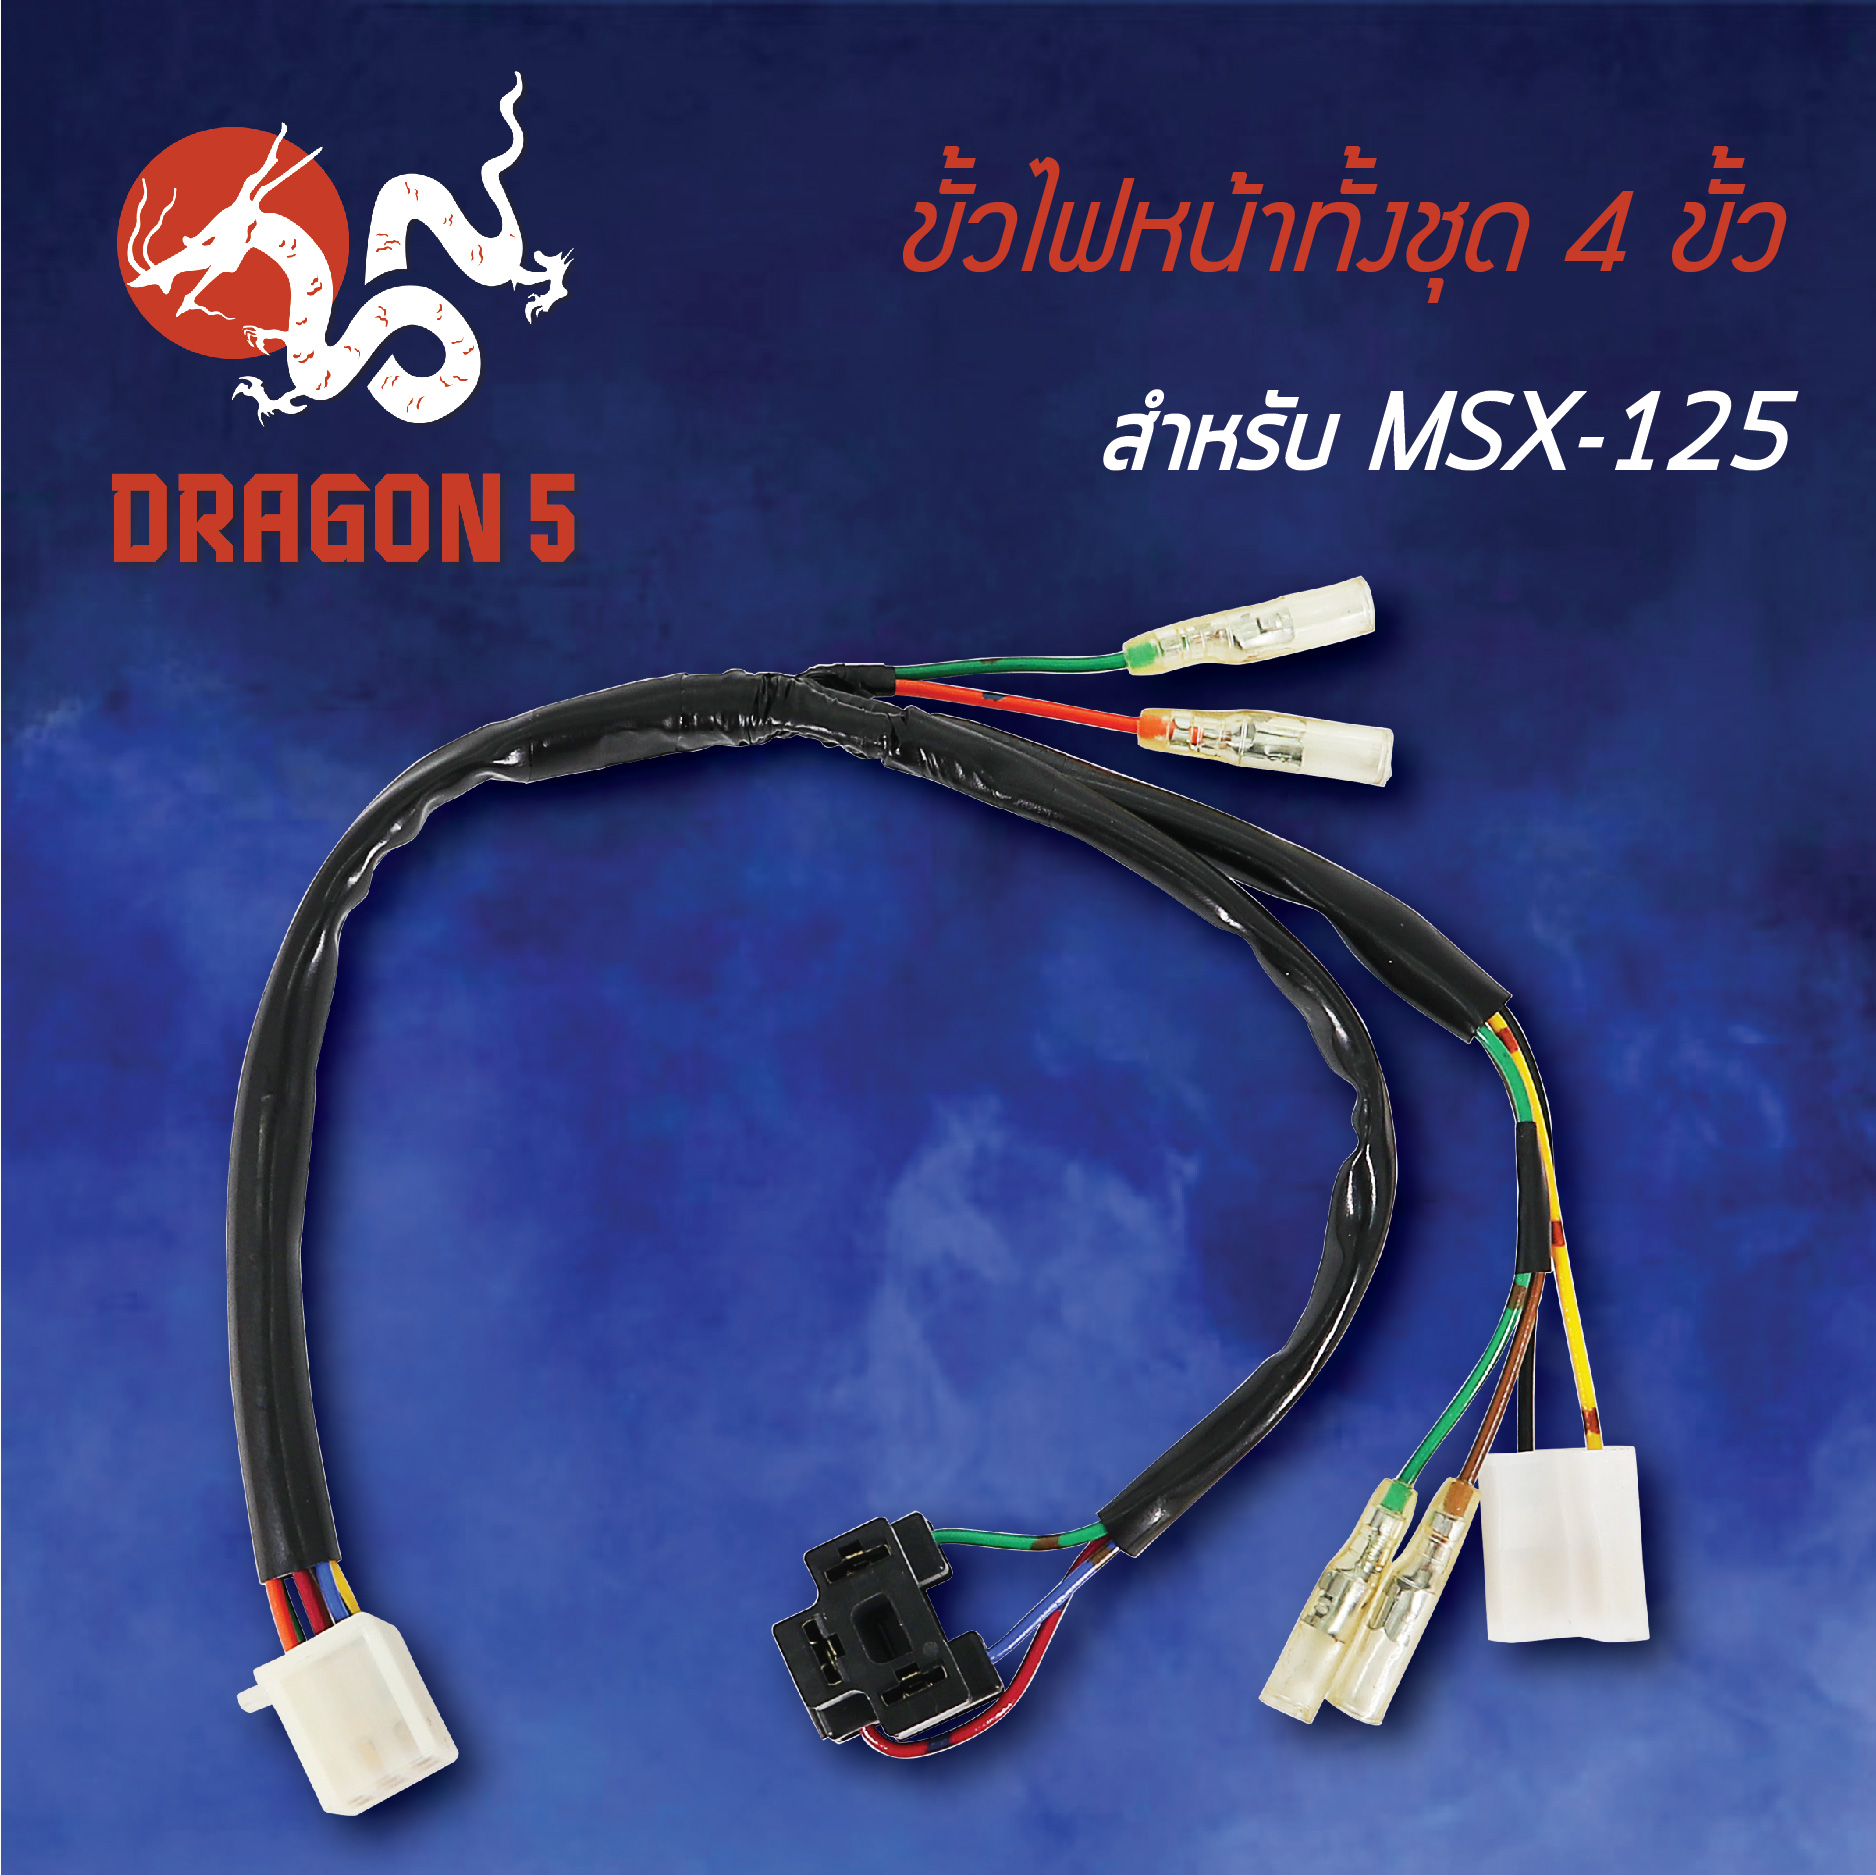 ขั้วไฟหน้า MSX-125,MSX ตัวเก่าไฟตาเดียว, ขั้วไฟหน้าทั้งชุด 4 ขั้ว MSX125 1310-092-00 HMA